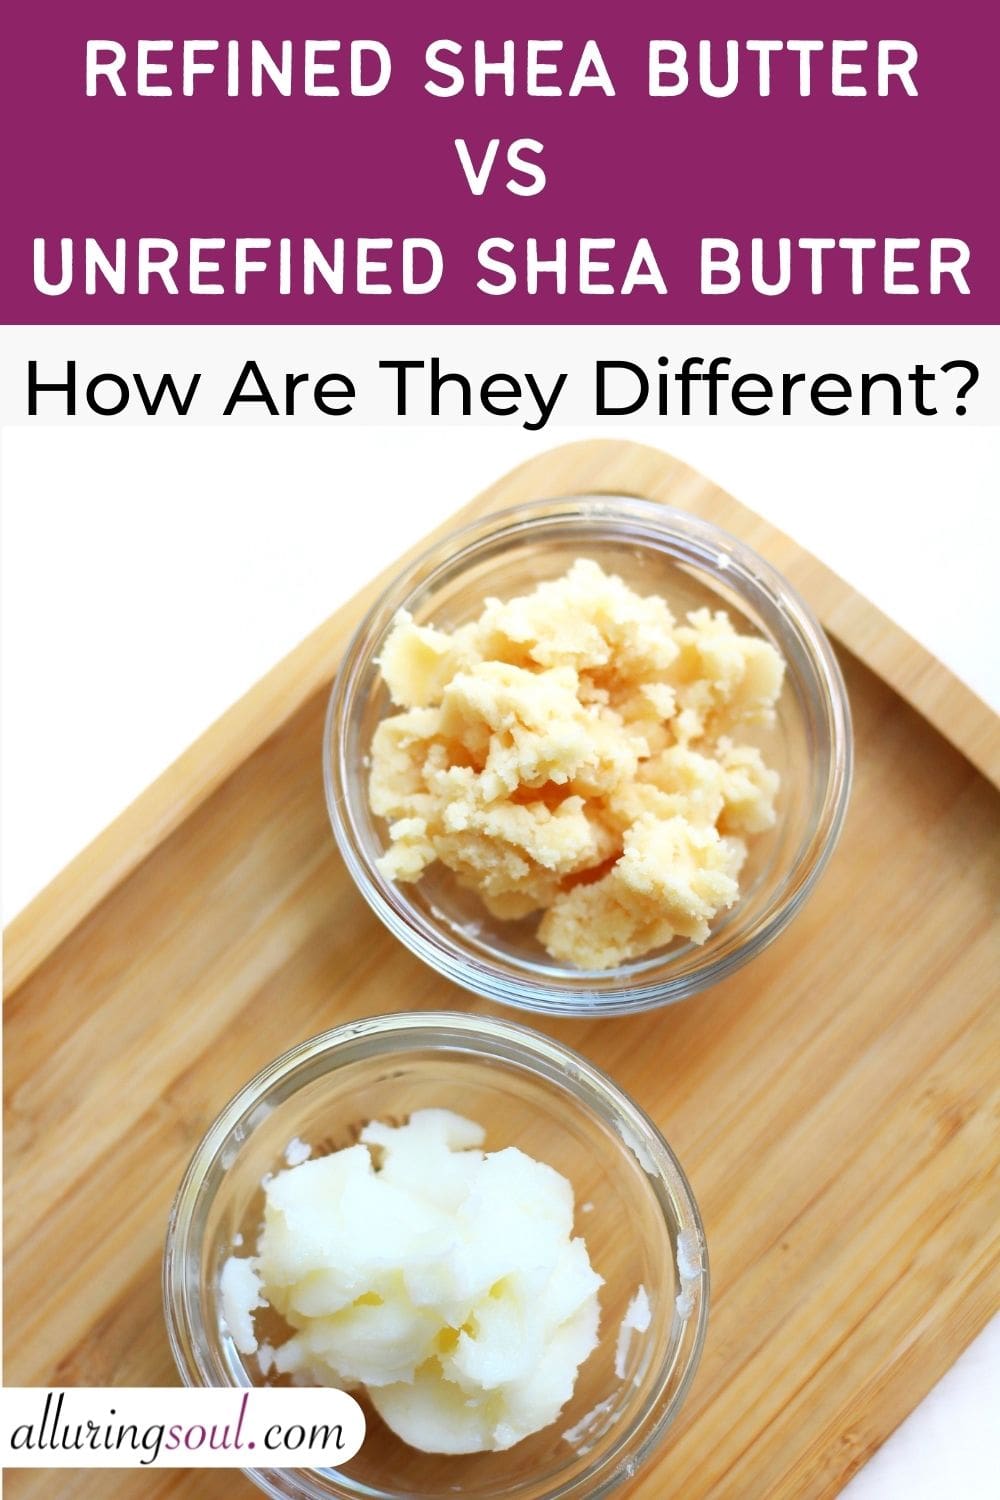 Refined vs Unrefined Shea Butter